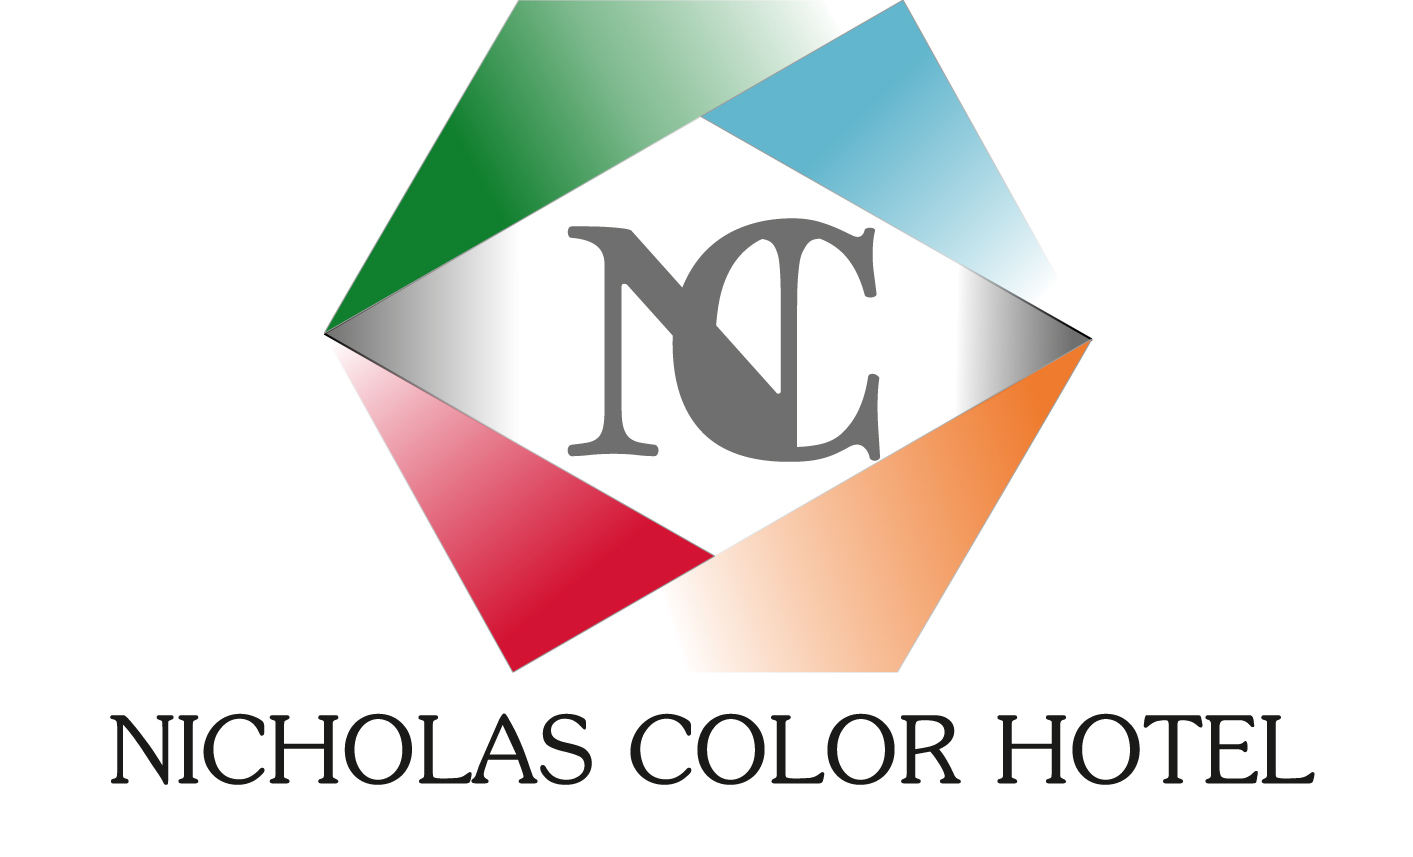 NICHOLAS COLOR HOTEL